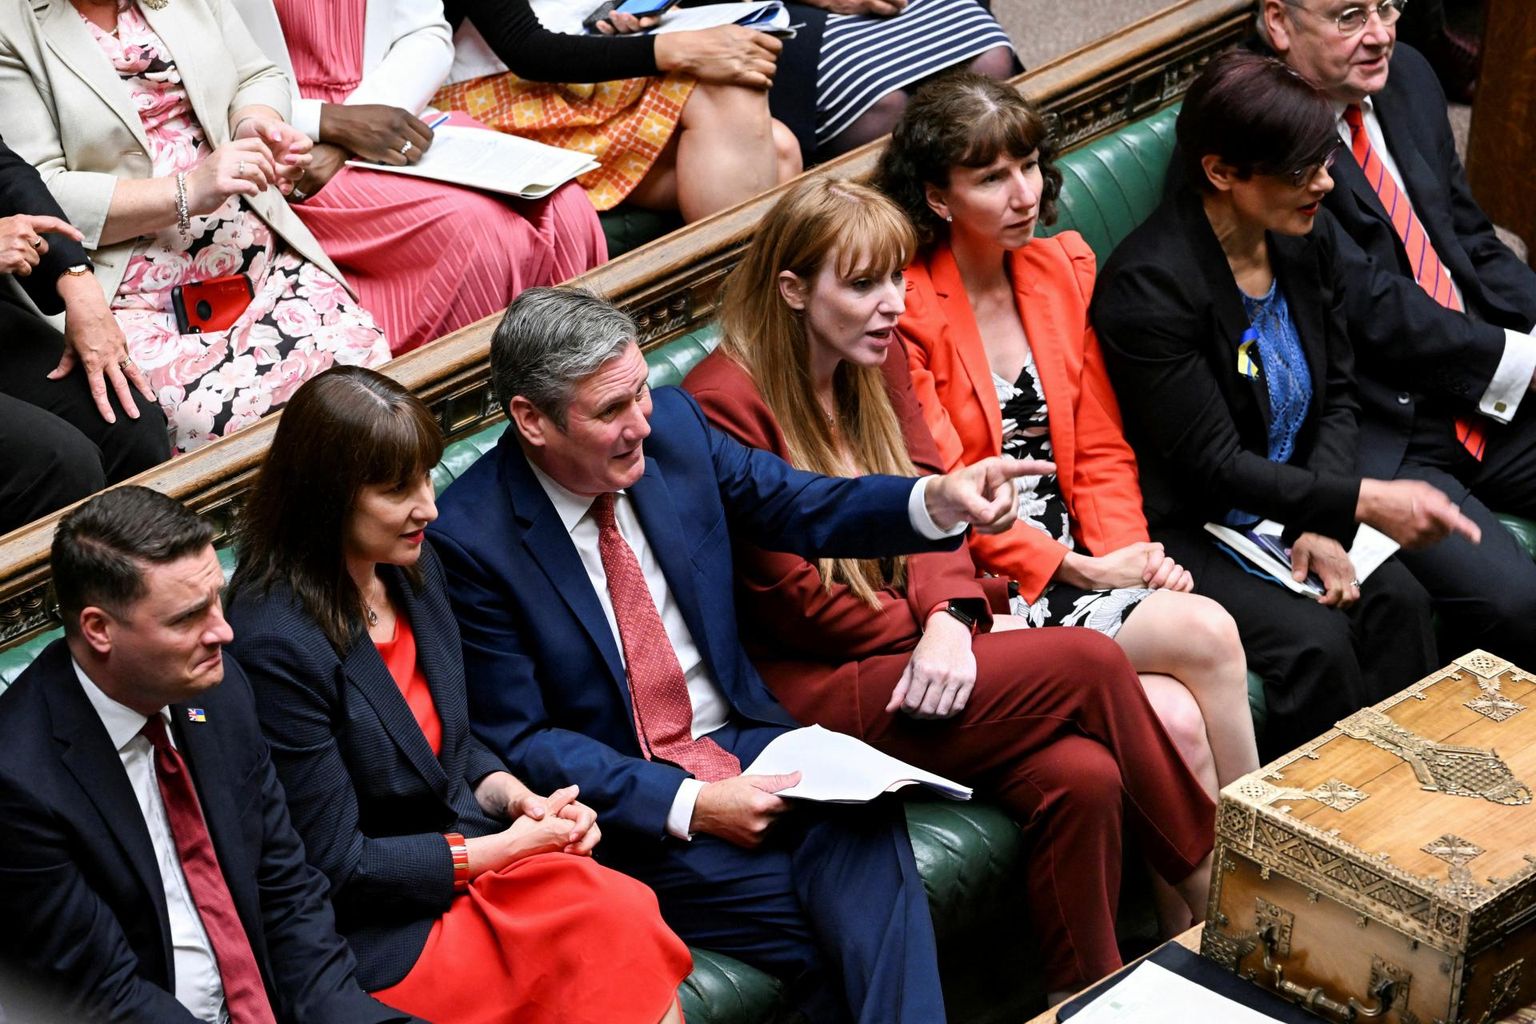 Briti parlamendis opositsioonis olevad leiboristide liidrid istungisaalis: keskel erakonna esimees Keir Starmer, tema paremal käel aseesimees Angela Rayner.